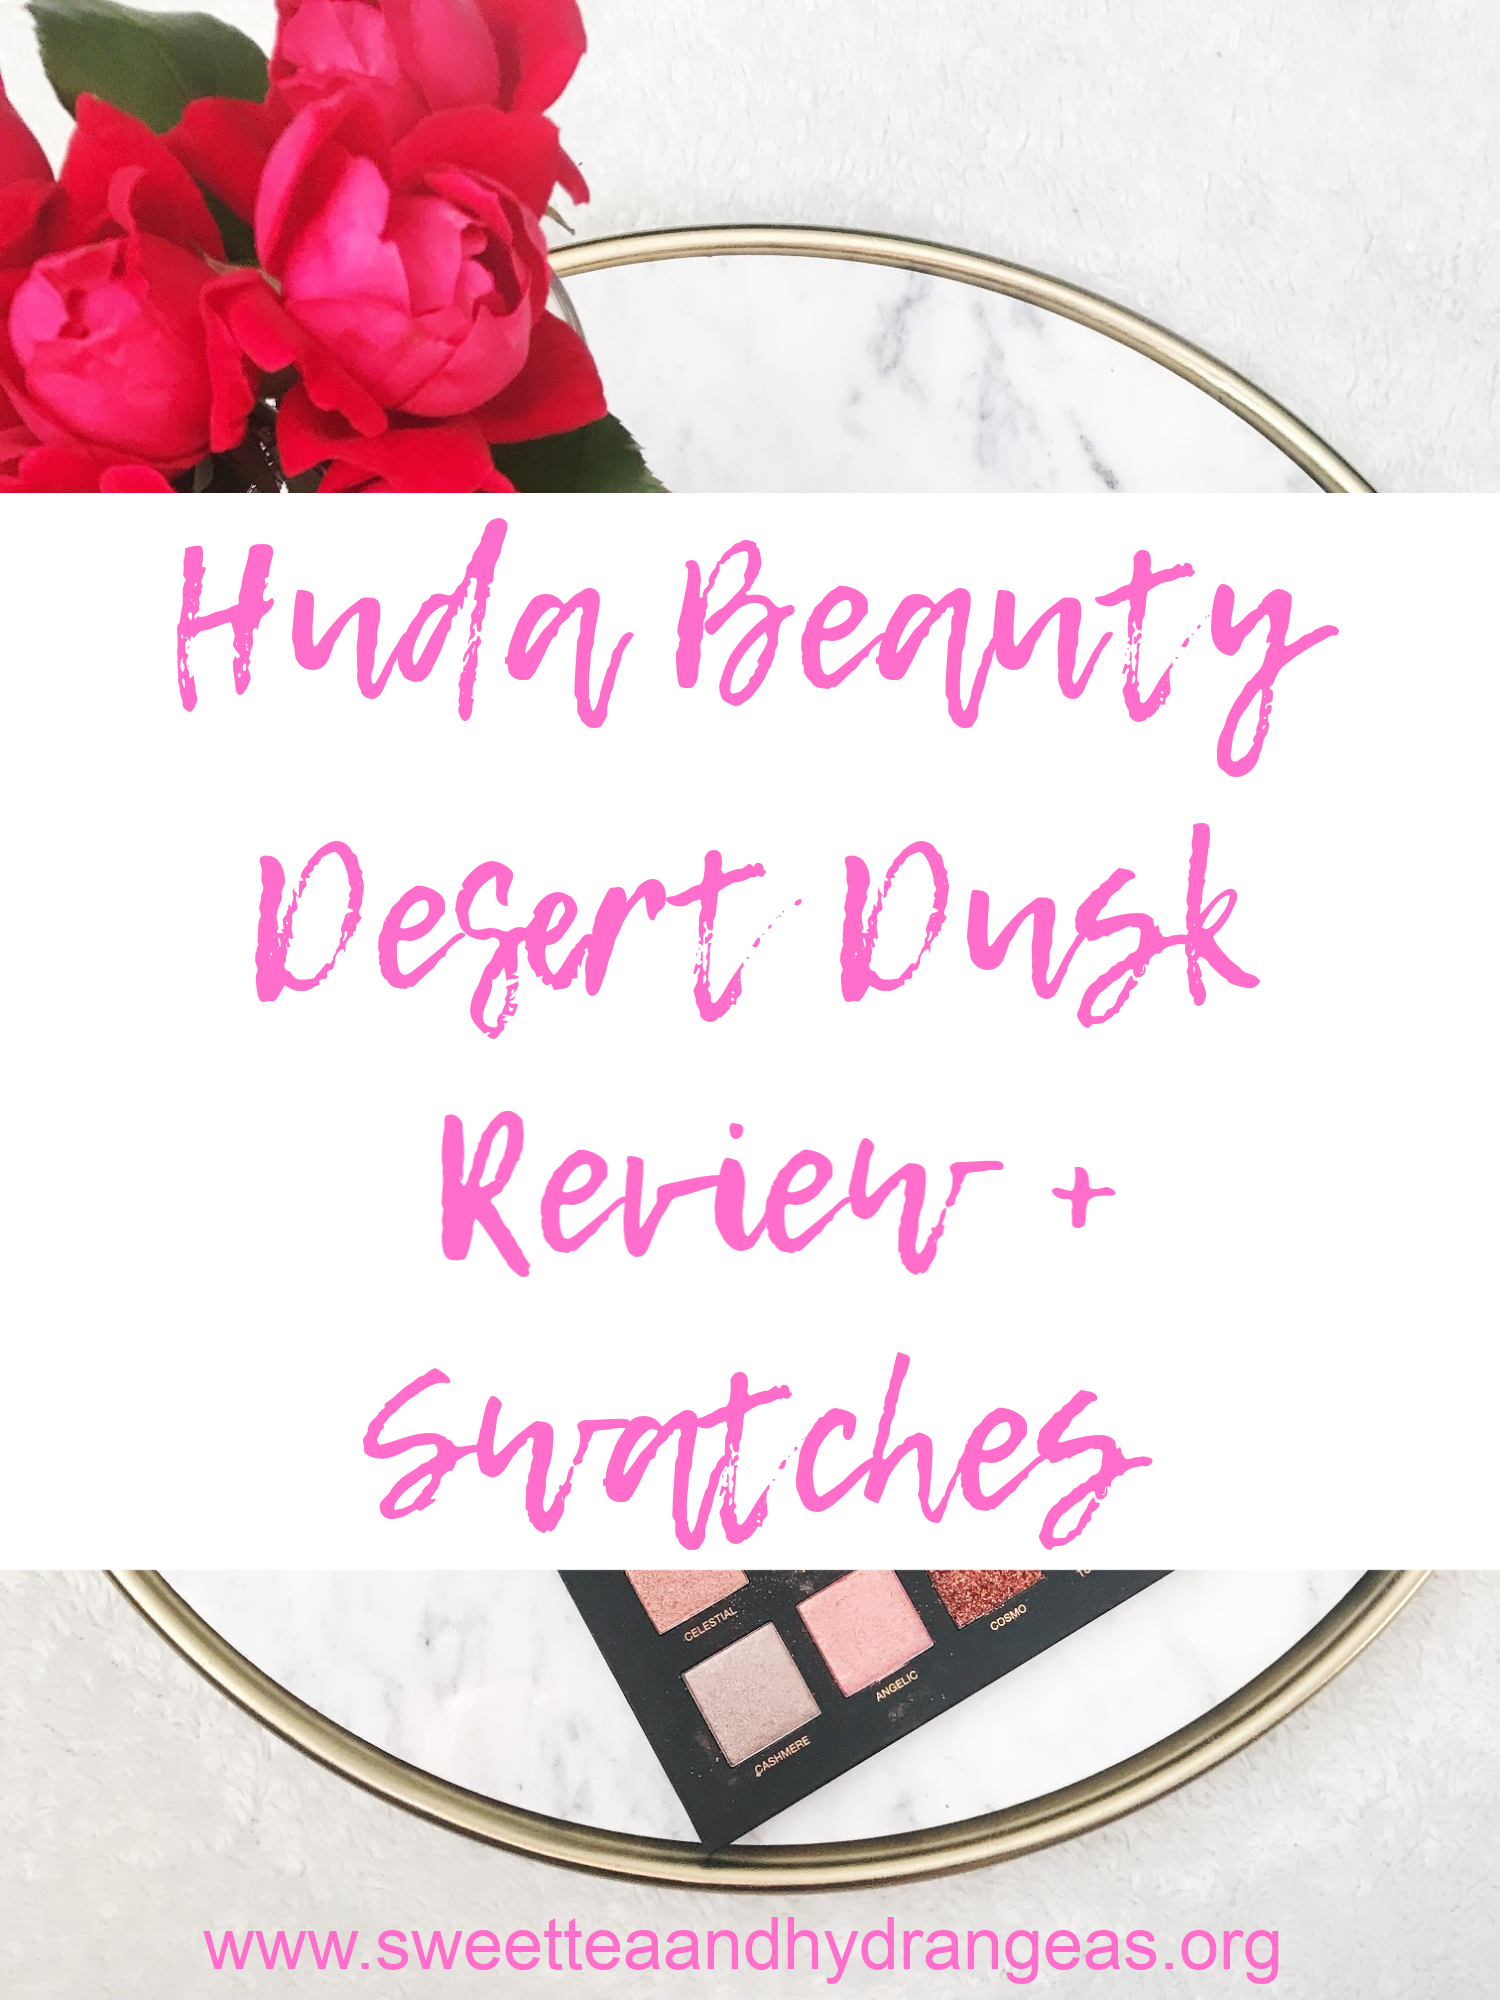 STH Huda Beauty Desert Dusk Review + Swatches